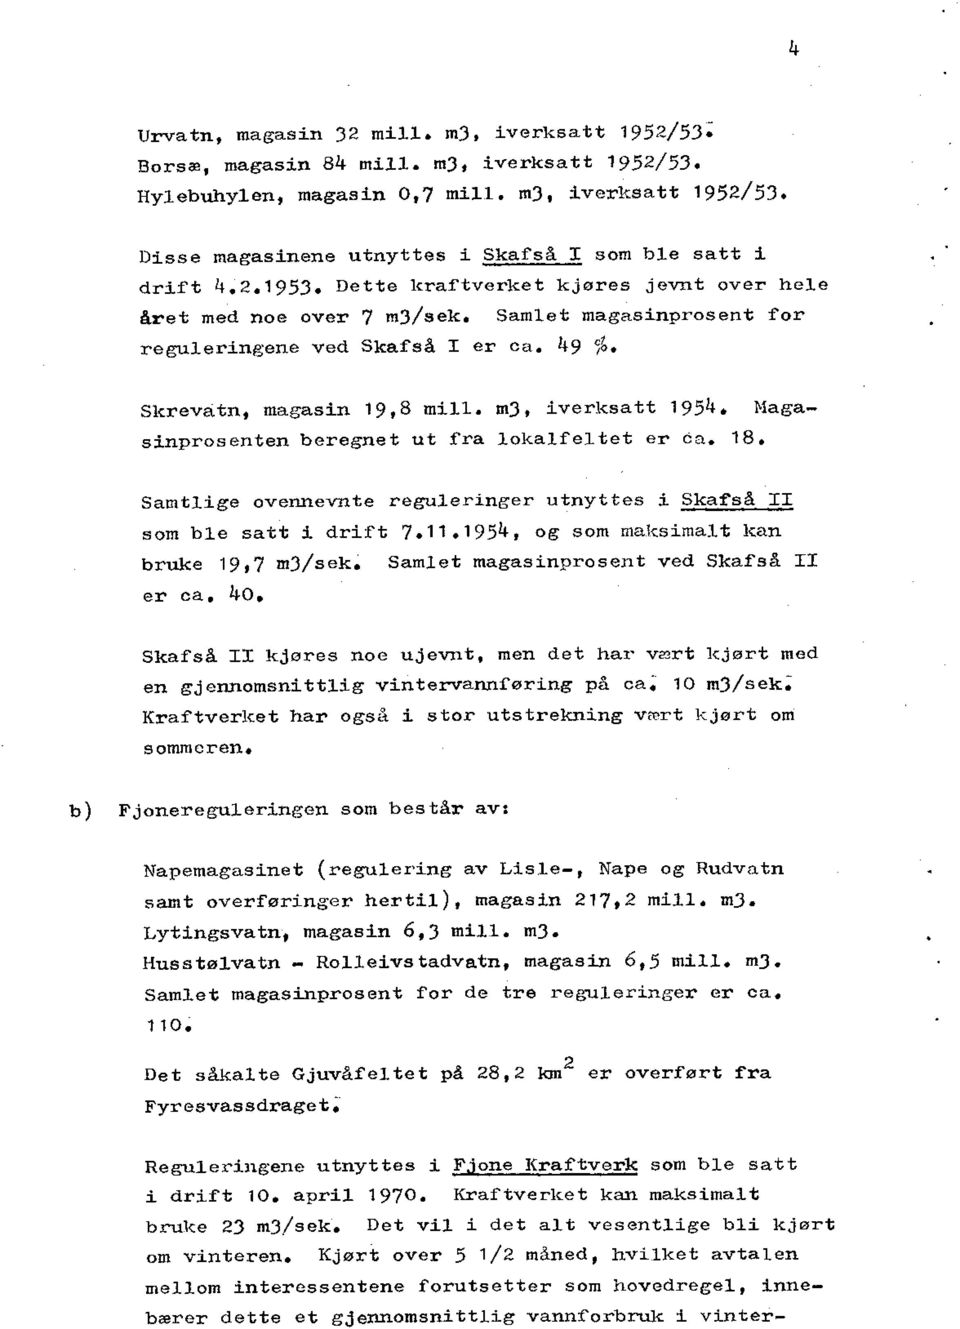 Magasinprosenten beregnet ut fra lokalfeltet er ca. 18. Samtlige ovennevnte reguleringer utnyttes i Skafså II som ble satt i drift 7.11.1954, og som maksimalt kan bruke 19,7 m3/sek.